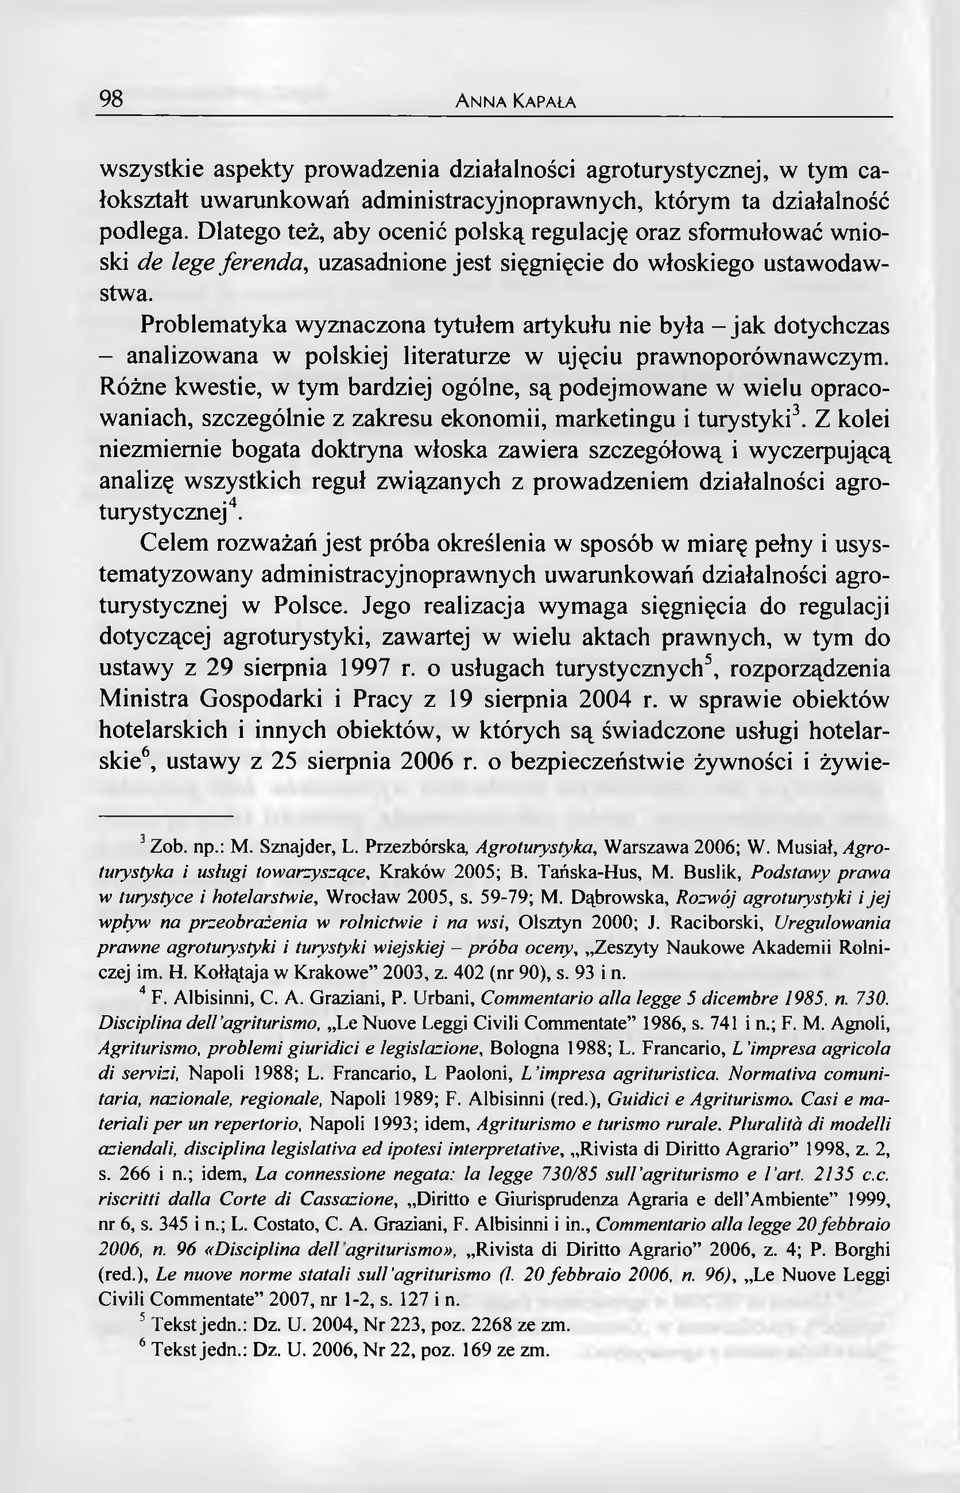 Problematyka wyznaczona tytułem artykułu nie była - jak dotychczas - analizowana w polskiej literaturze w ujęciu prawnoporównawczym.